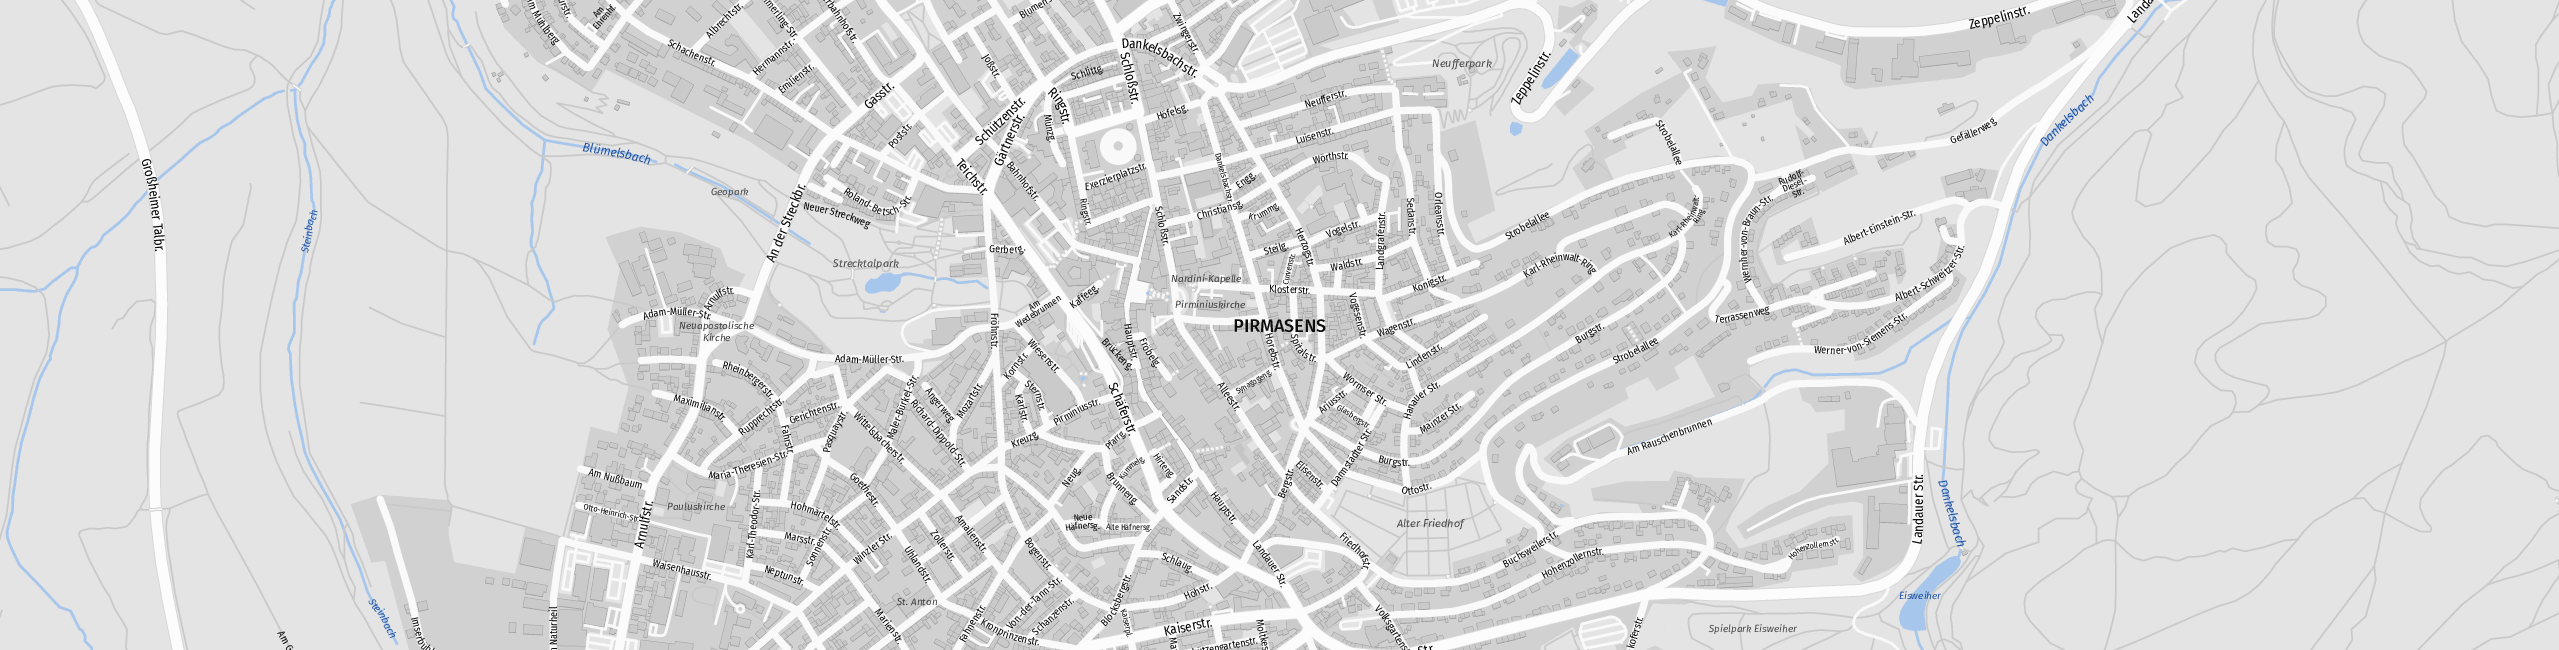 Stadtplan Pirmasens zum Downloaden.